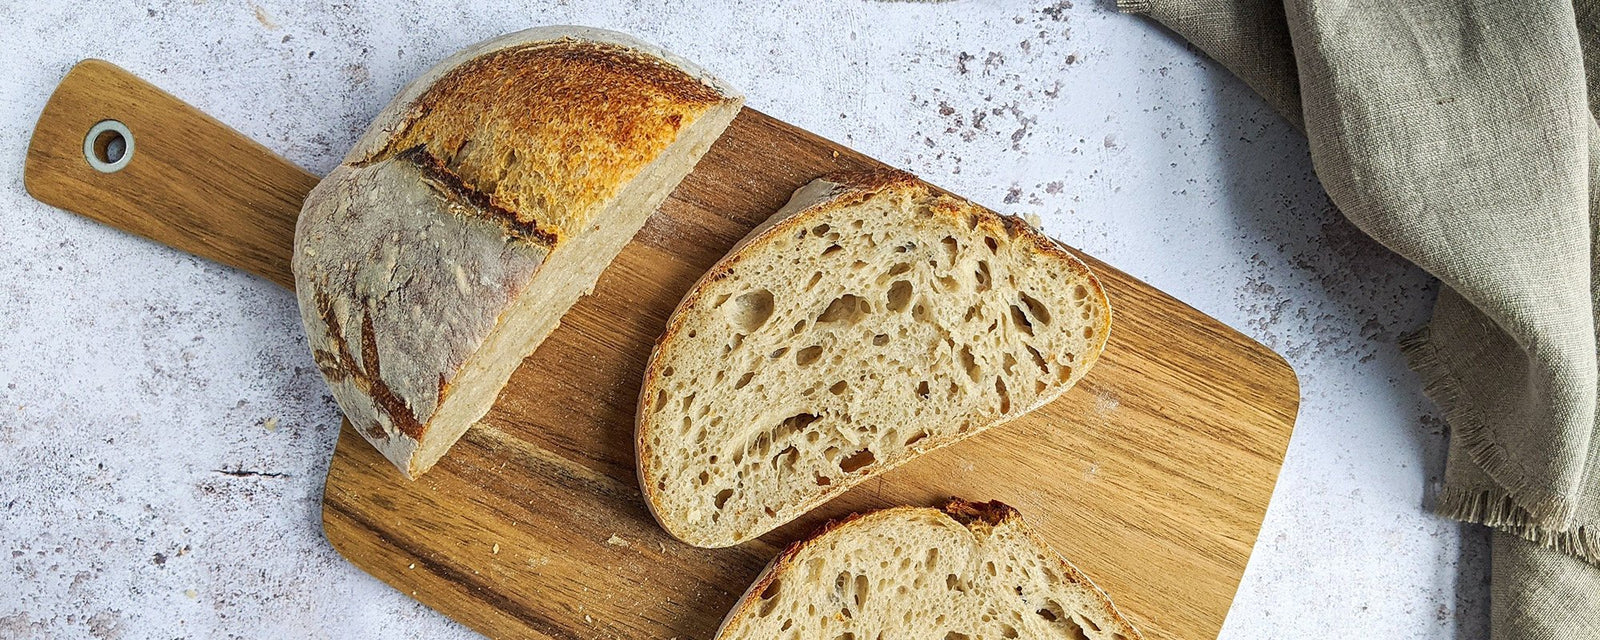 Pan sin trigo mercadona